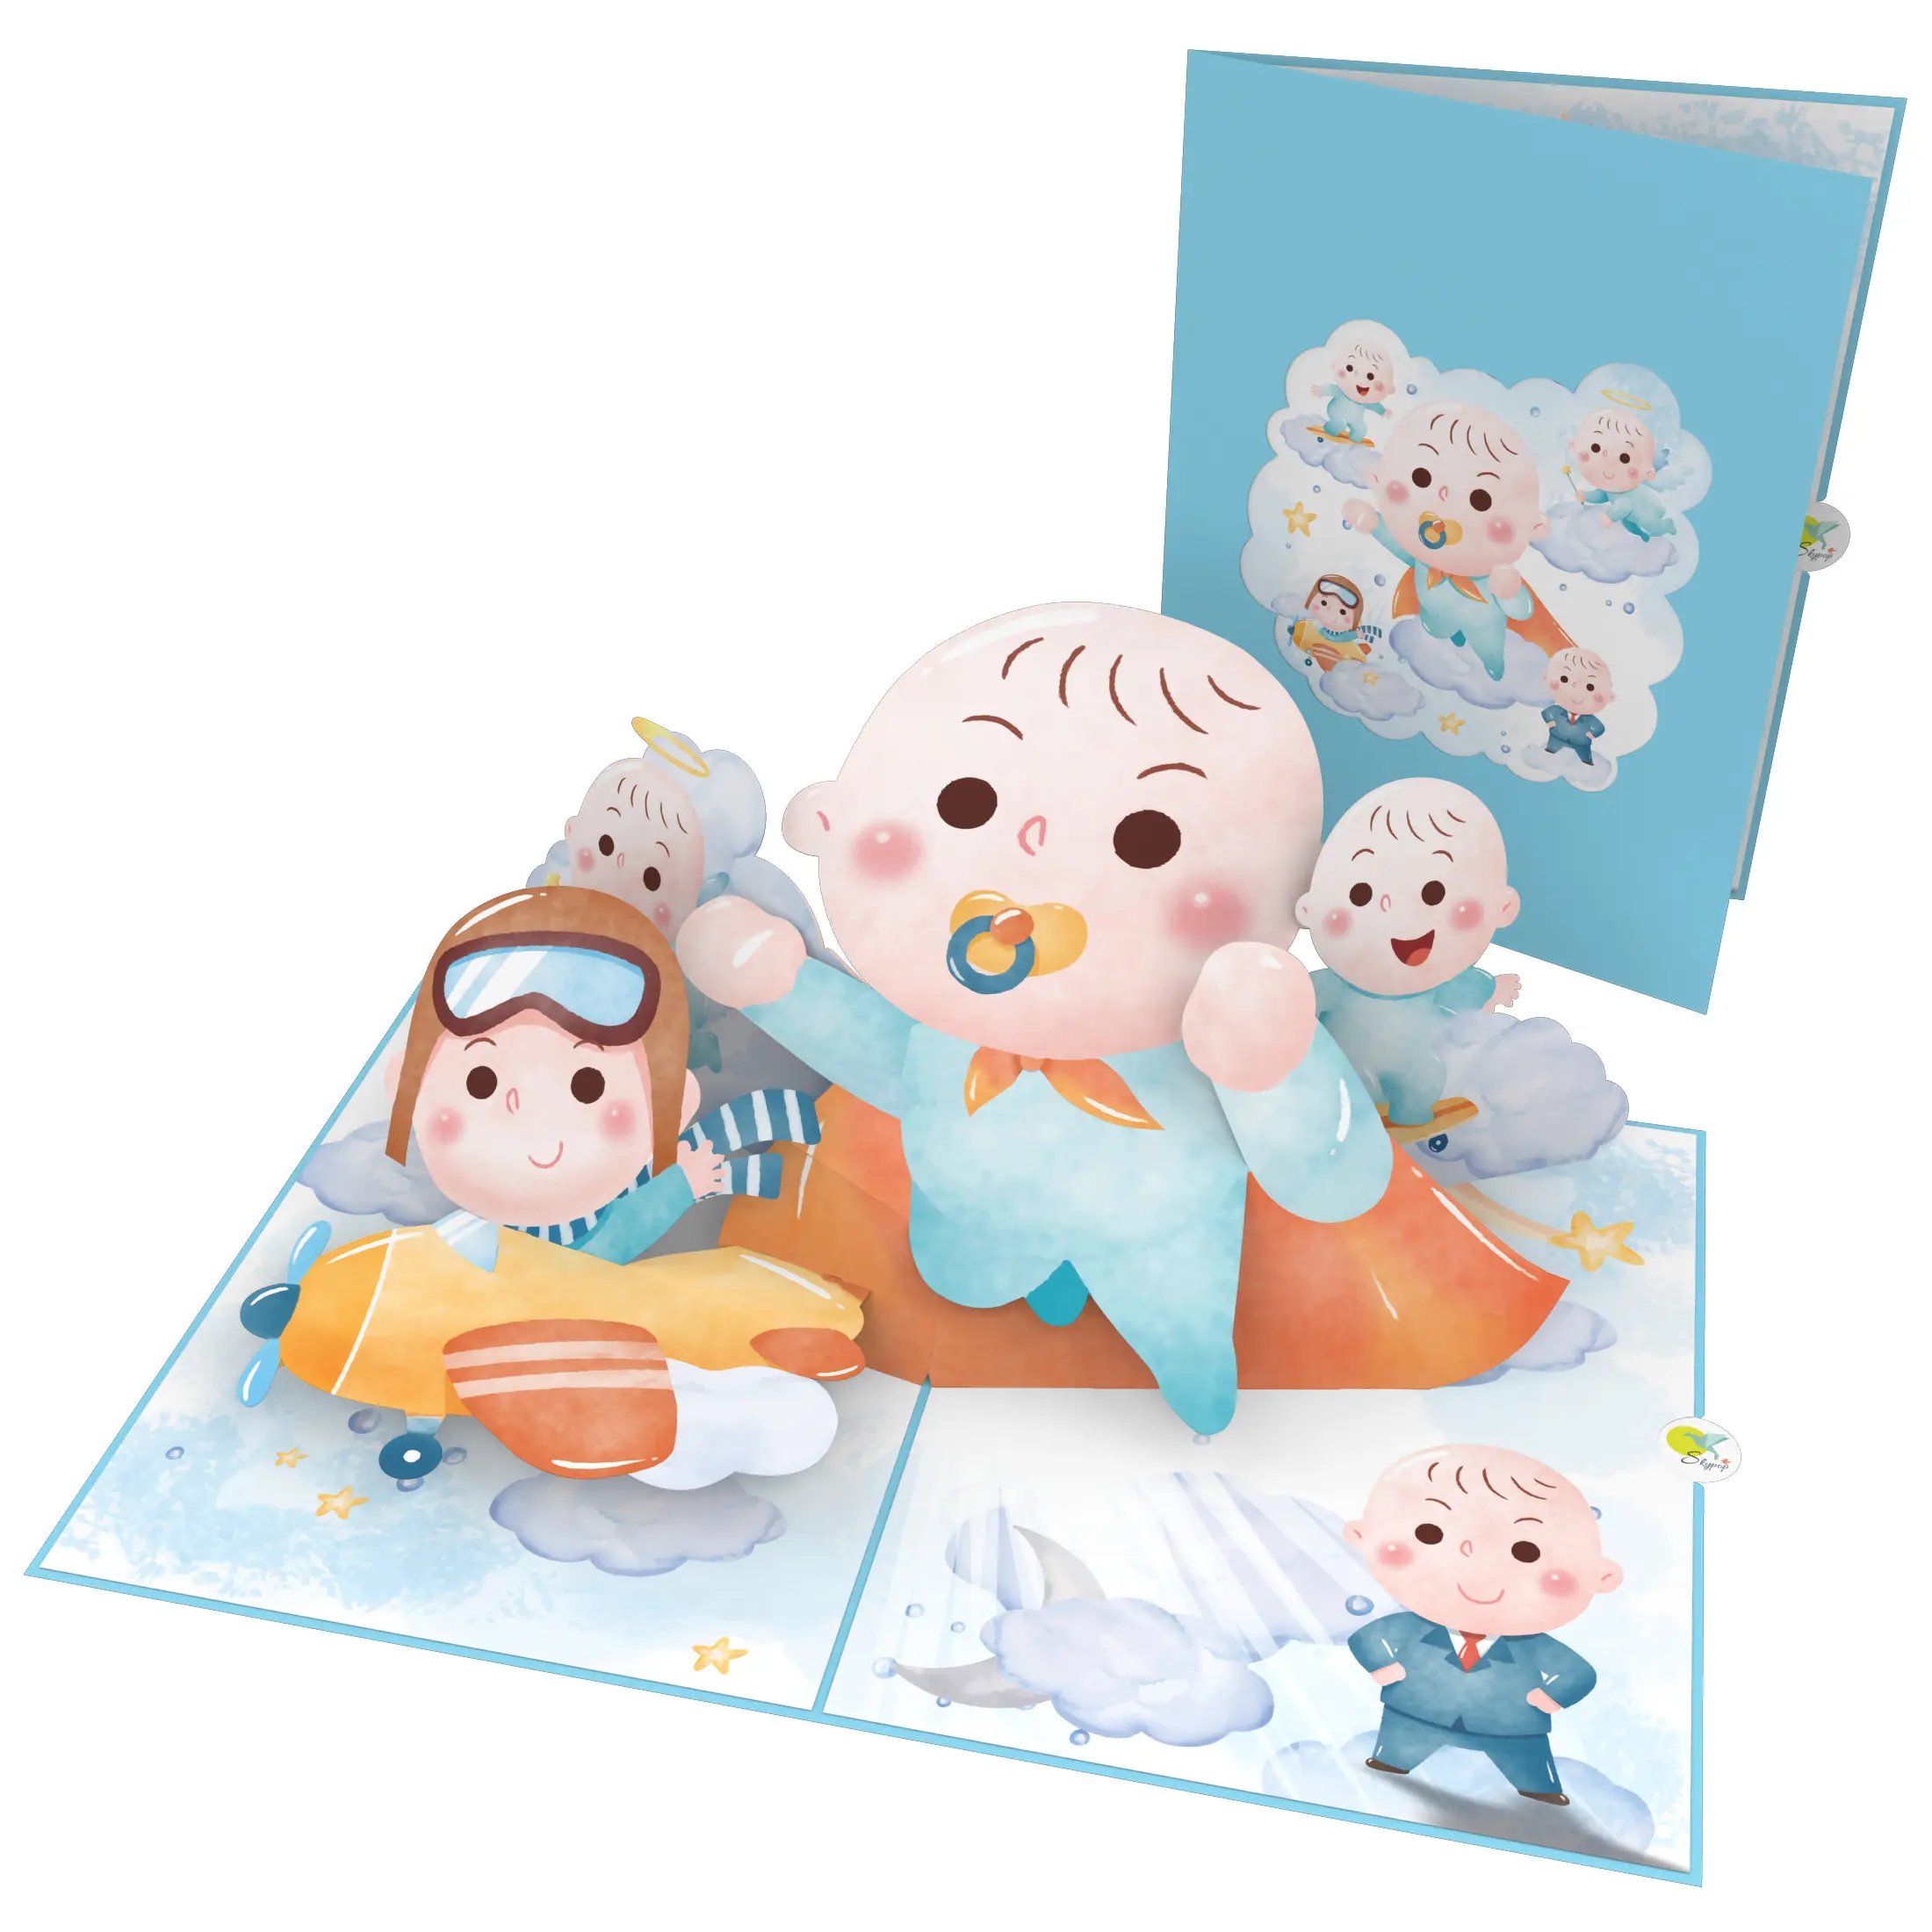 Baby Moments 3D Pop Up Card Servicio OEM Fabricante directo en Vietnam Tarjeta de regalo de bebé para seres queridos